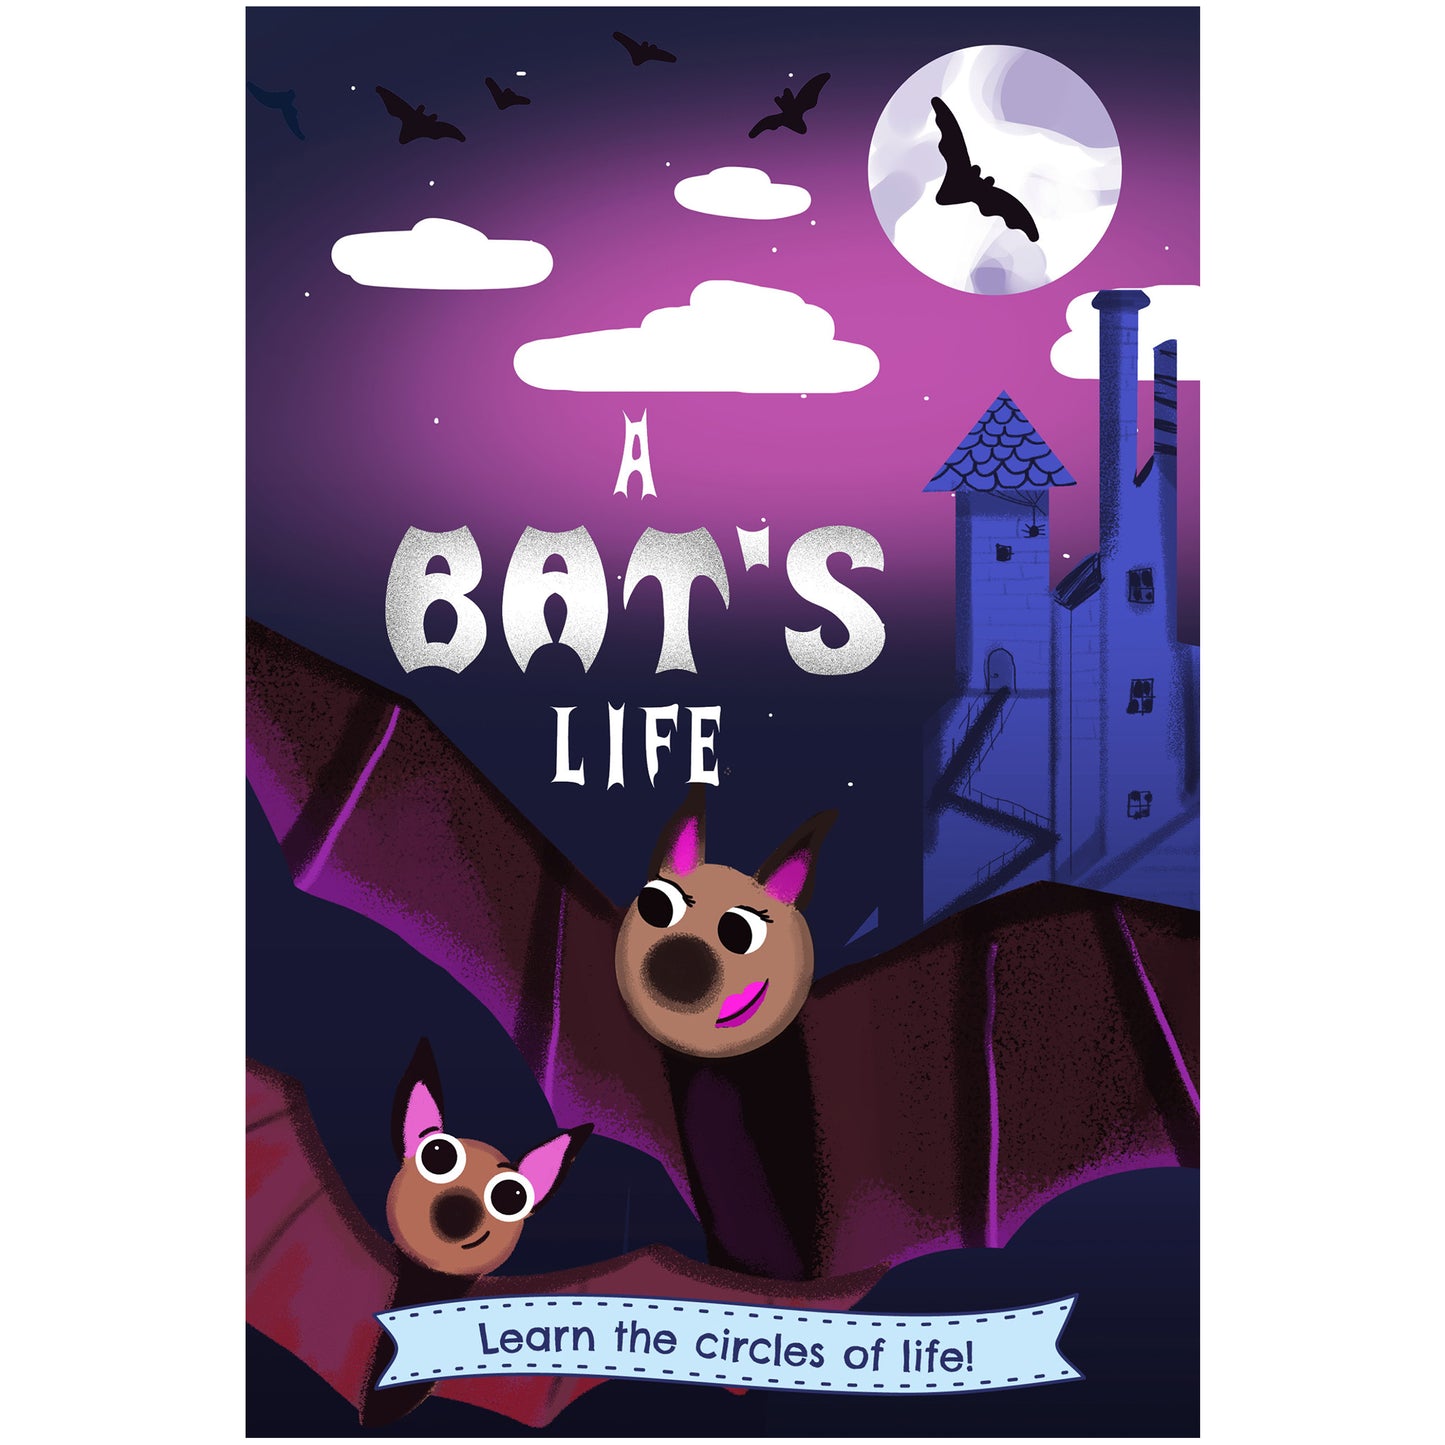 A Bat's Life